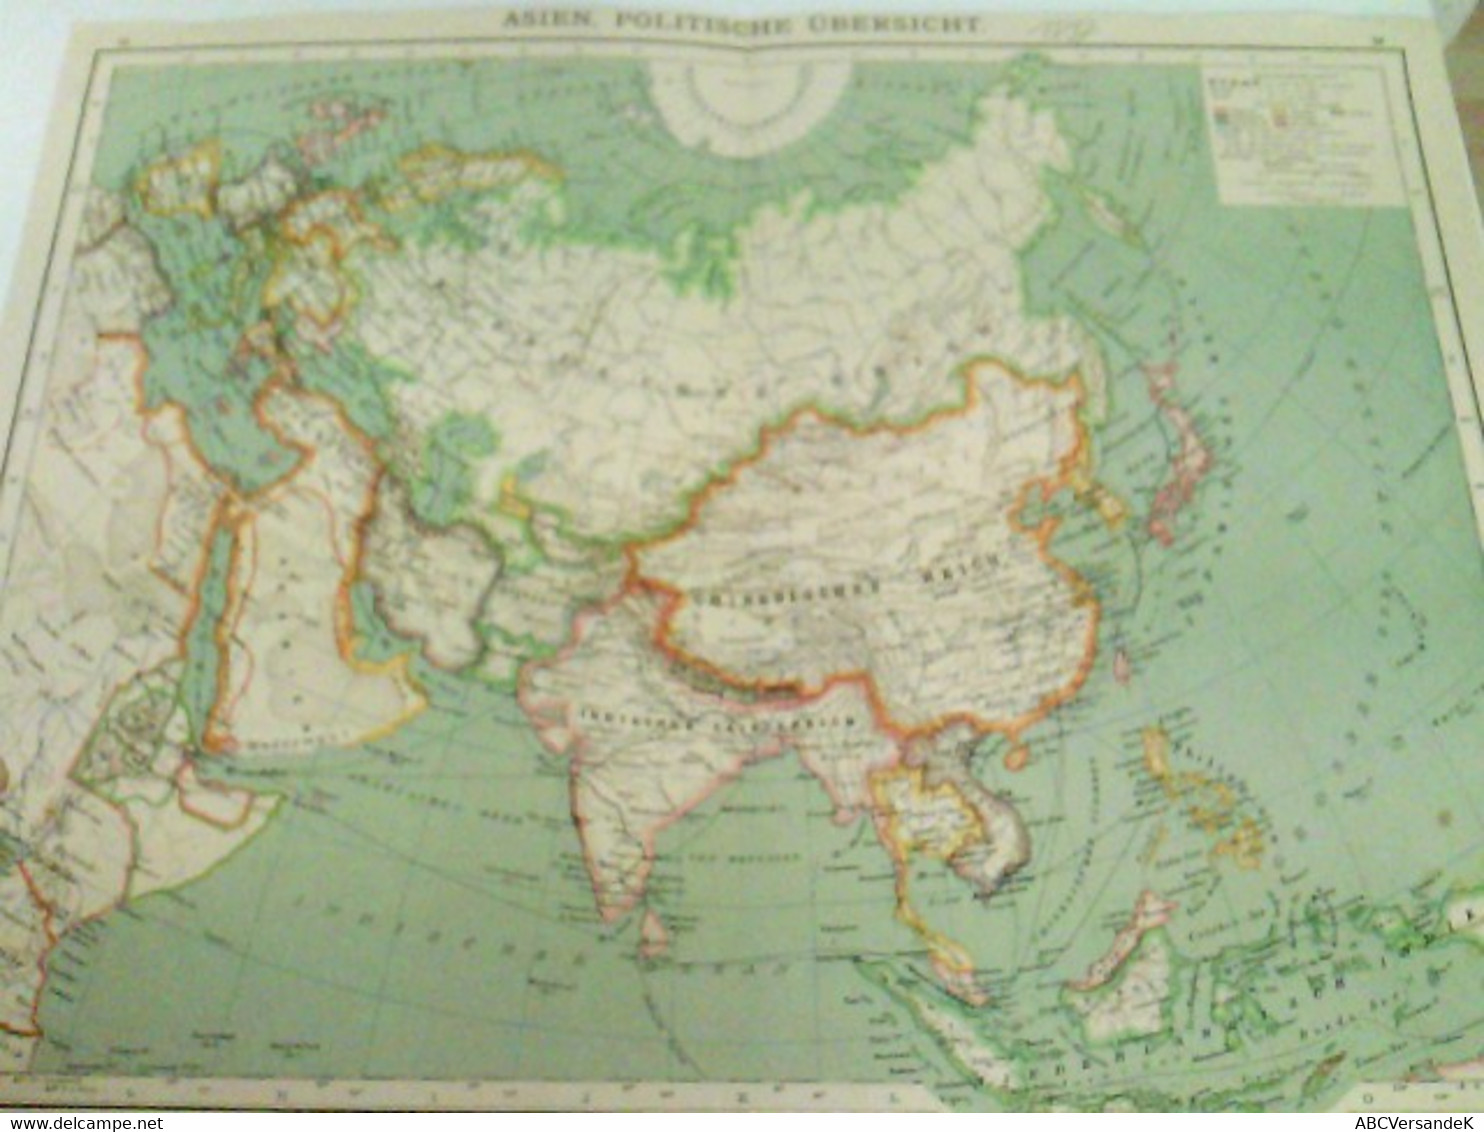 Farblithografie Asien, Politische Übersicht, Maßstab 1 : 35.000.000 - Asia & Vicino Oriente